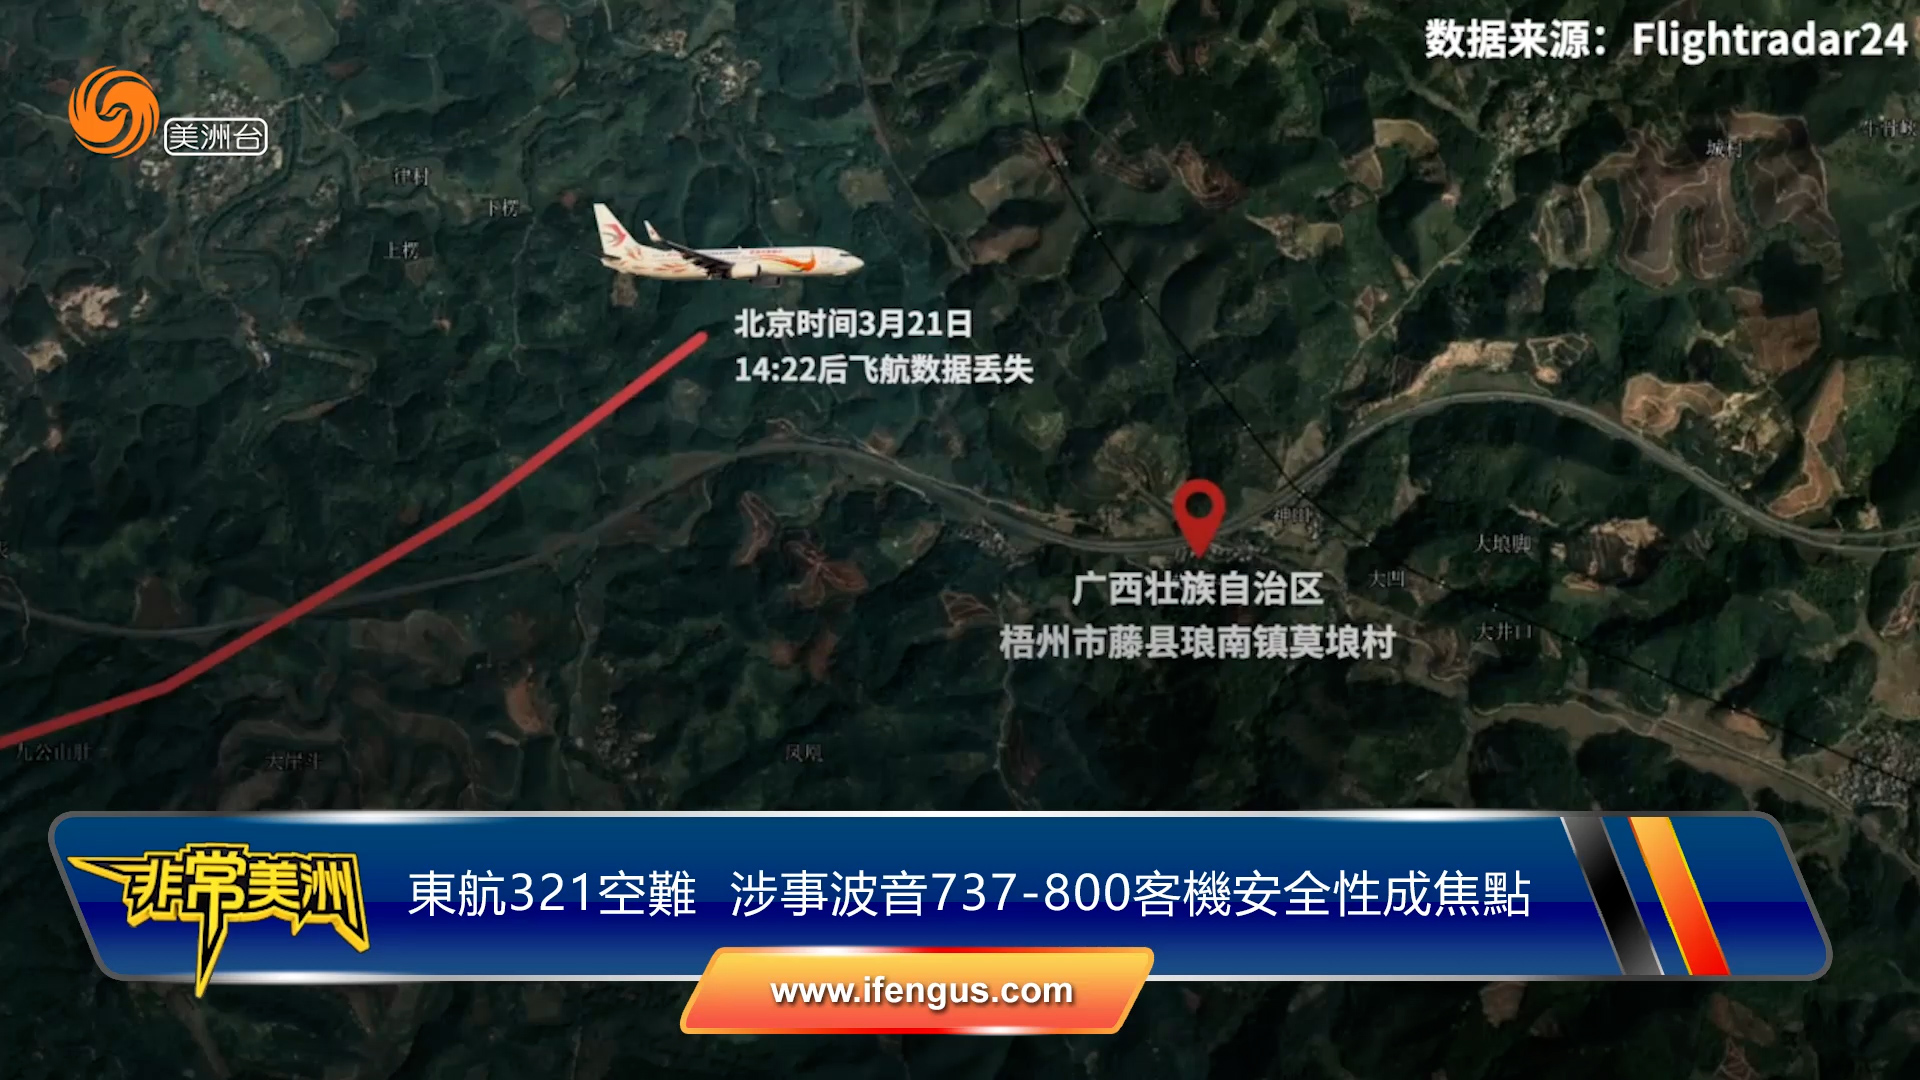 东航321空难  涉事波音737-800客机安全性成焦点